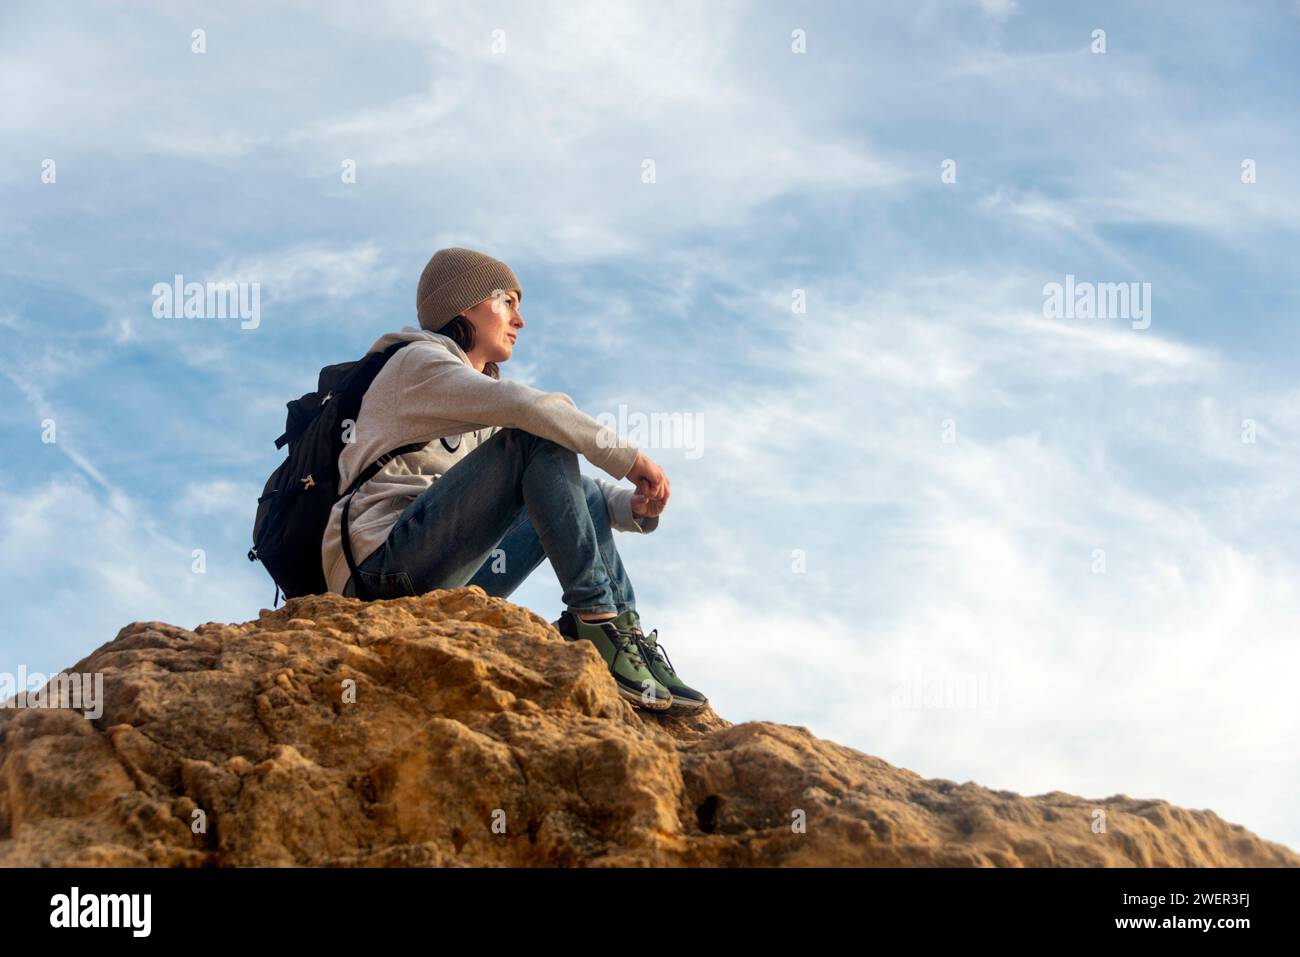 mujer excursionista sentada en la parte superior de una roca mirando la vista Foto de stock